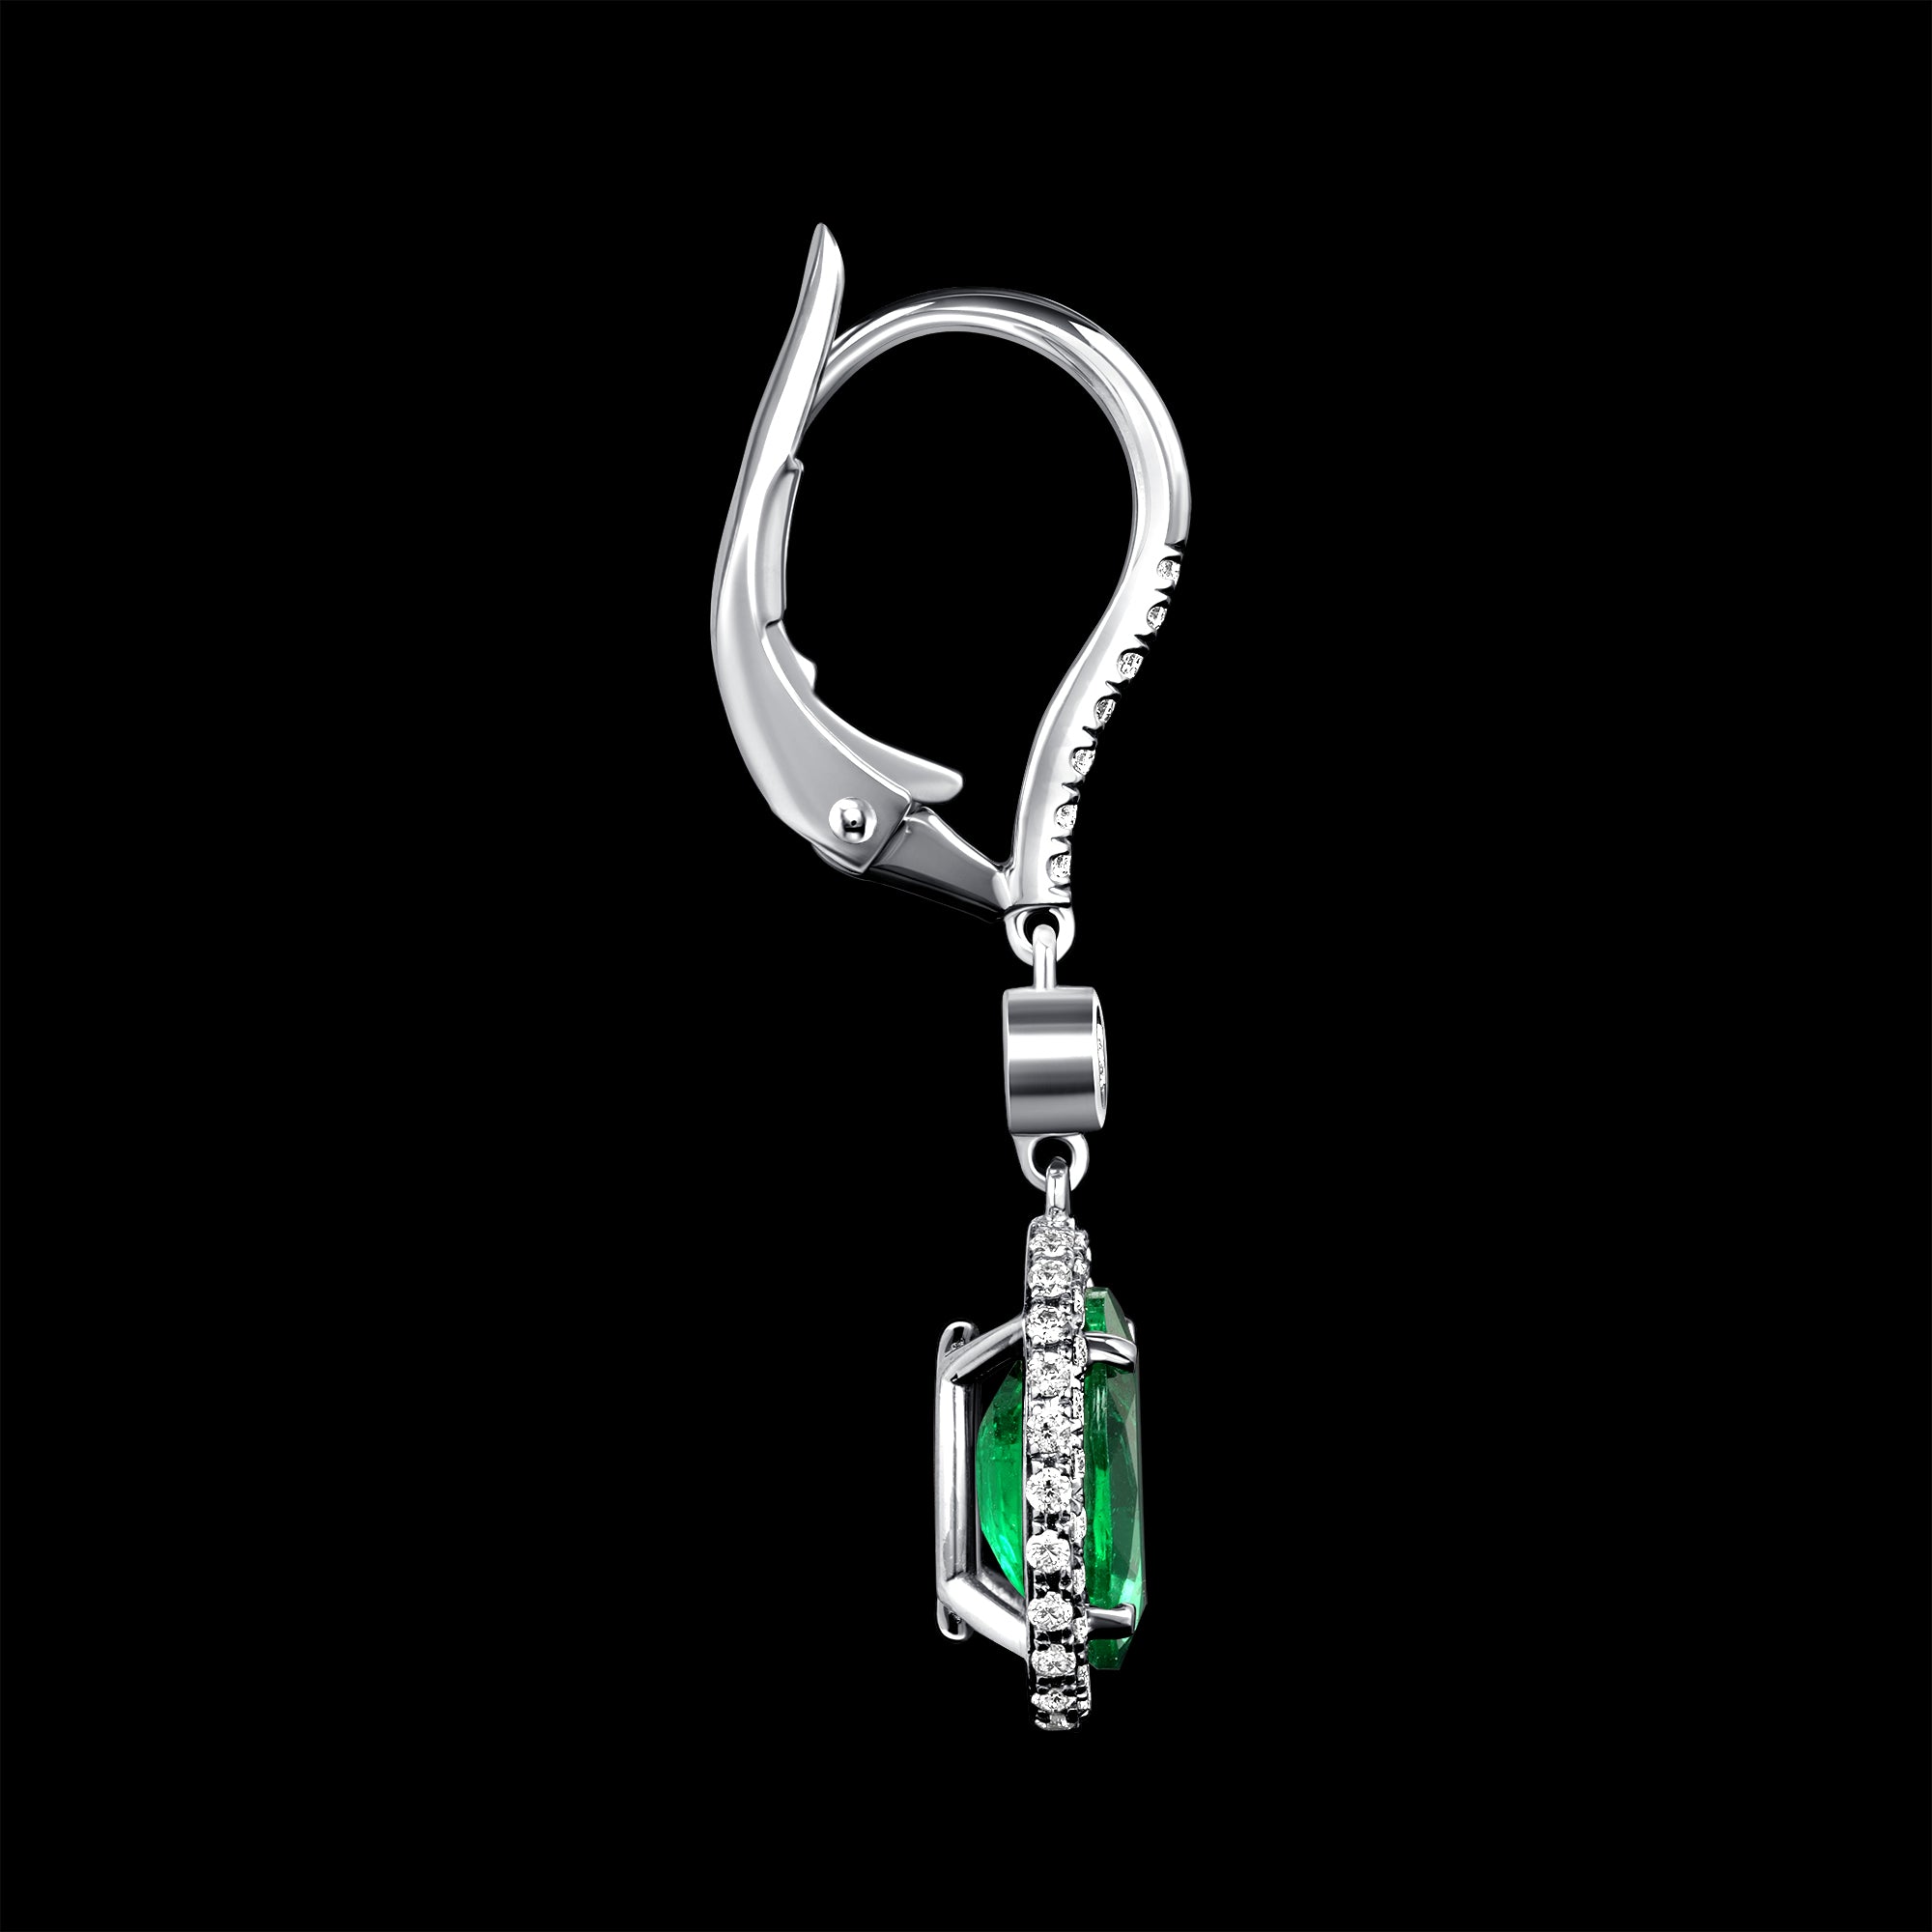 Oval Emerald Halo Drop Earrings - 2.66ct TW